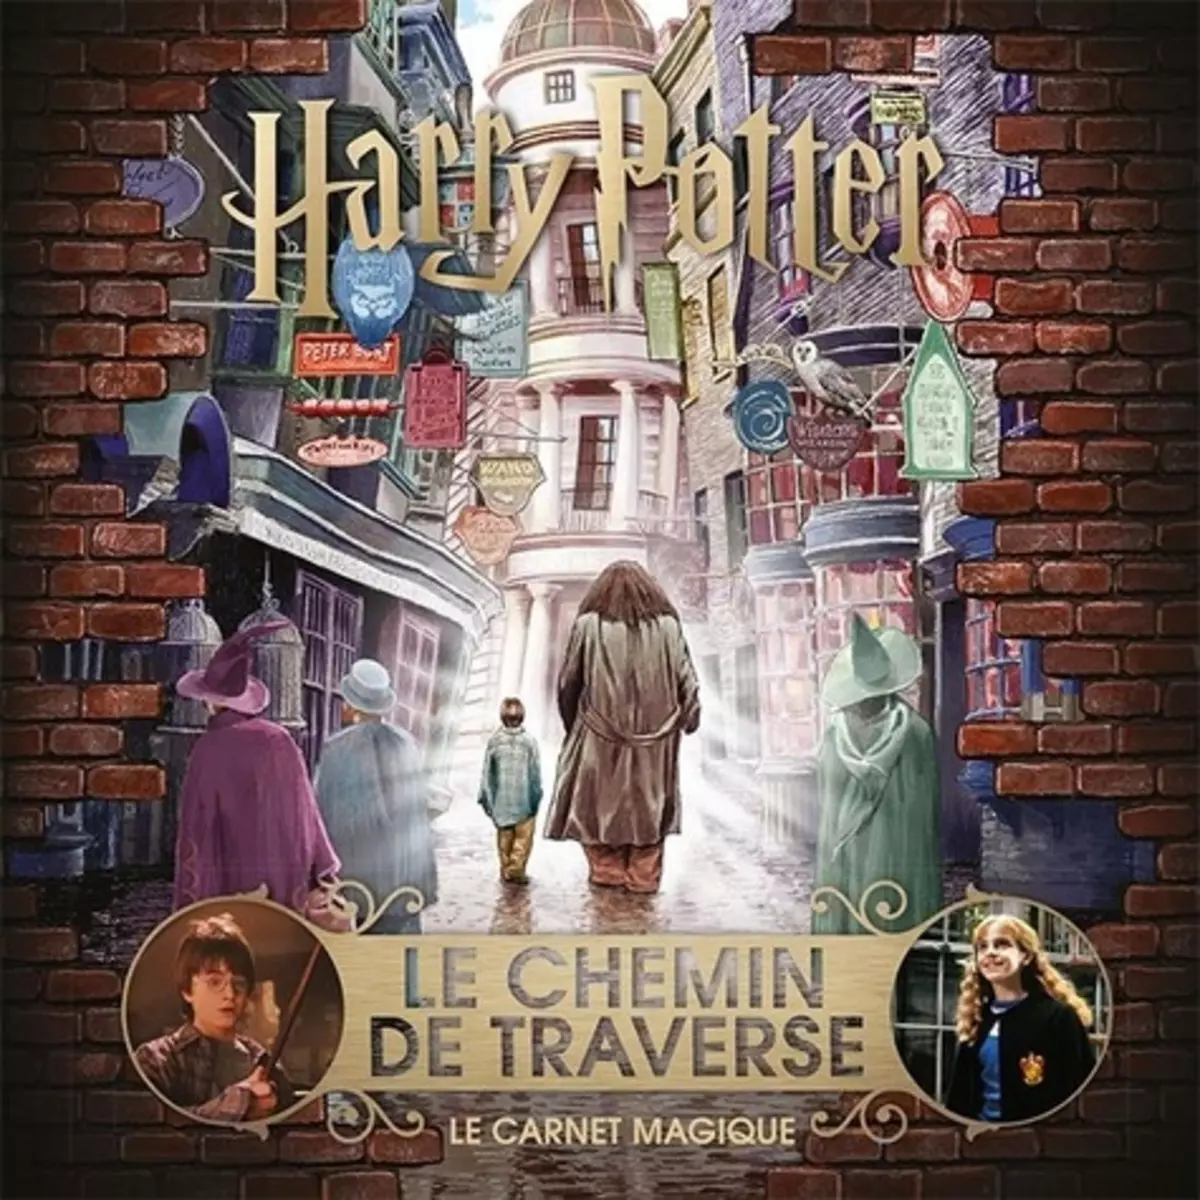  HARRY POTTER : LE CHEMIN DE TRAVERSE. LE CARNET MAGIQUE, Gallimard Jeunesse